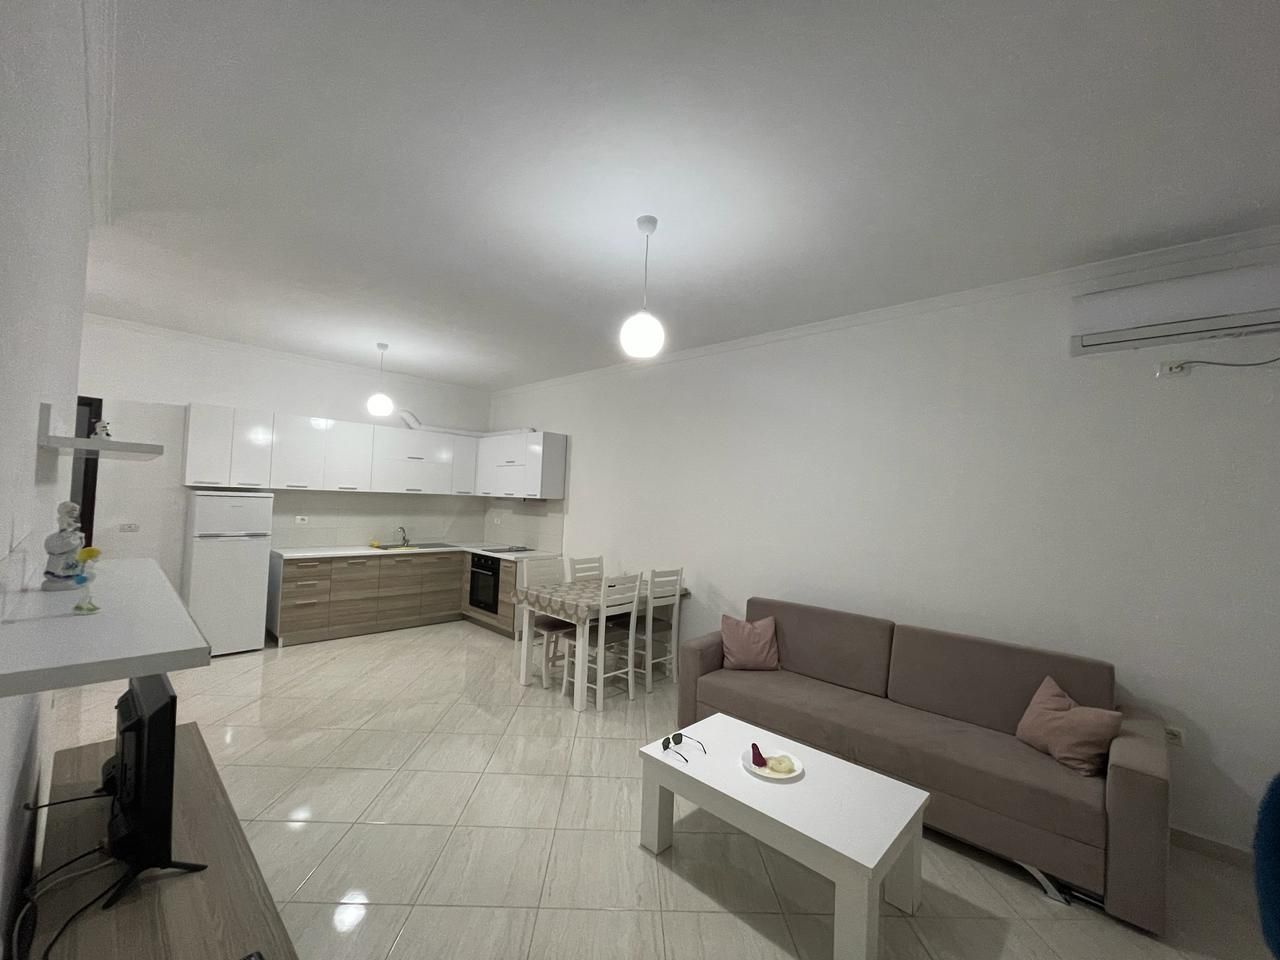 Apartament Per Shitje Ne Vlore Shqiperi, I Pozicionuar Ne Nje Zone Te Qete, Prane Plazhit